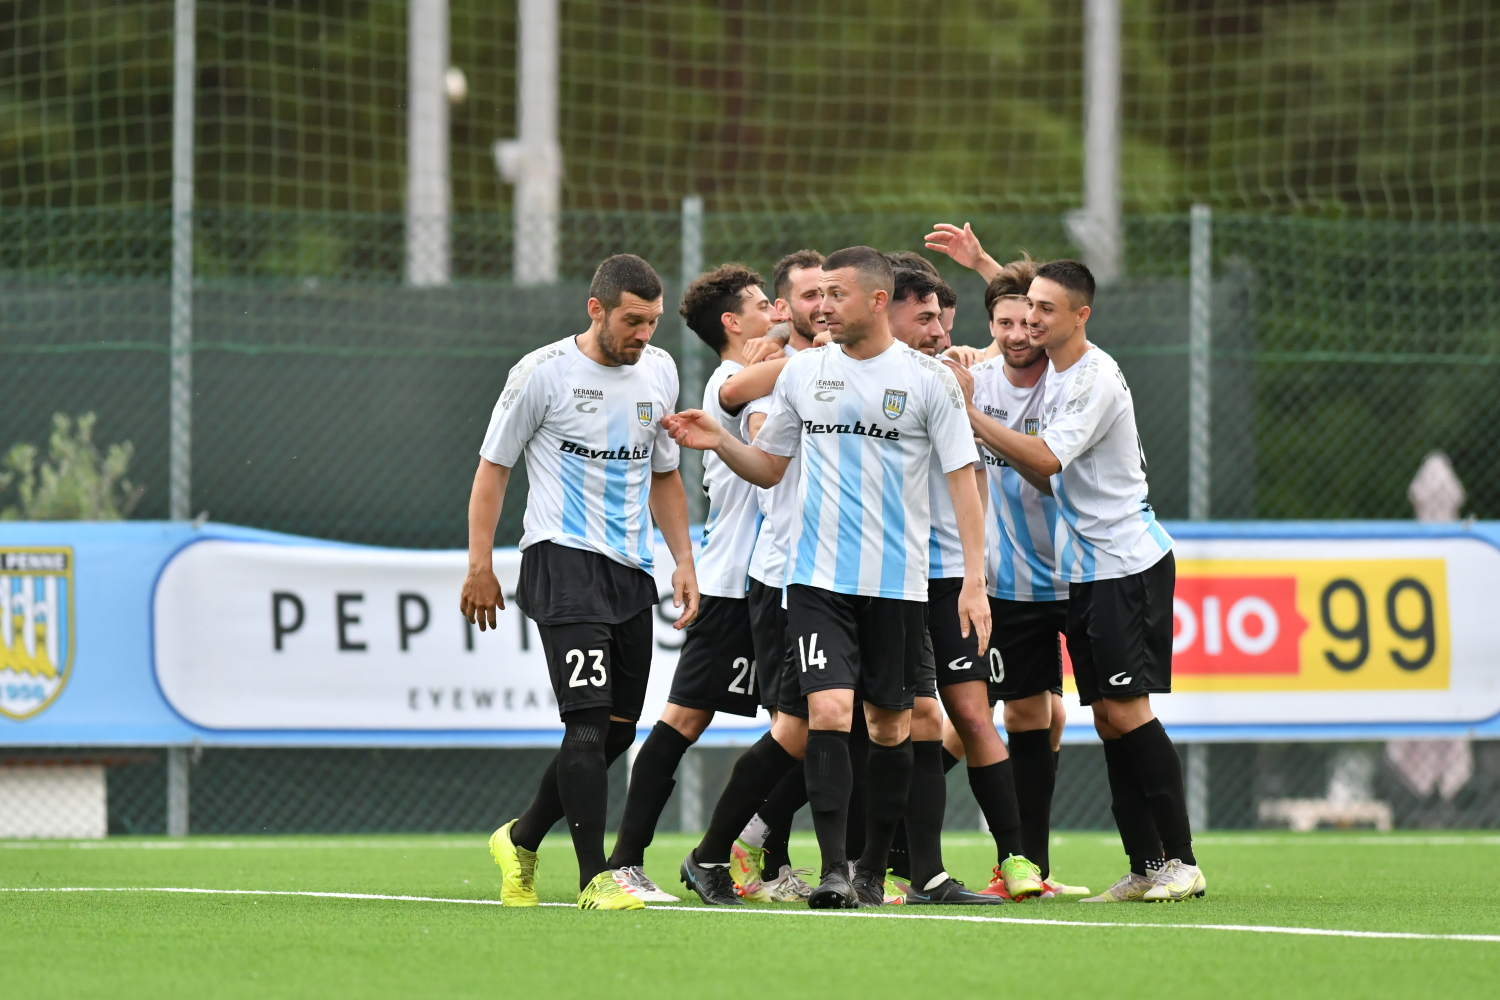 La Fiorita e Tre Penne in finale scudetto a San Marino: si affronteranno giovedì